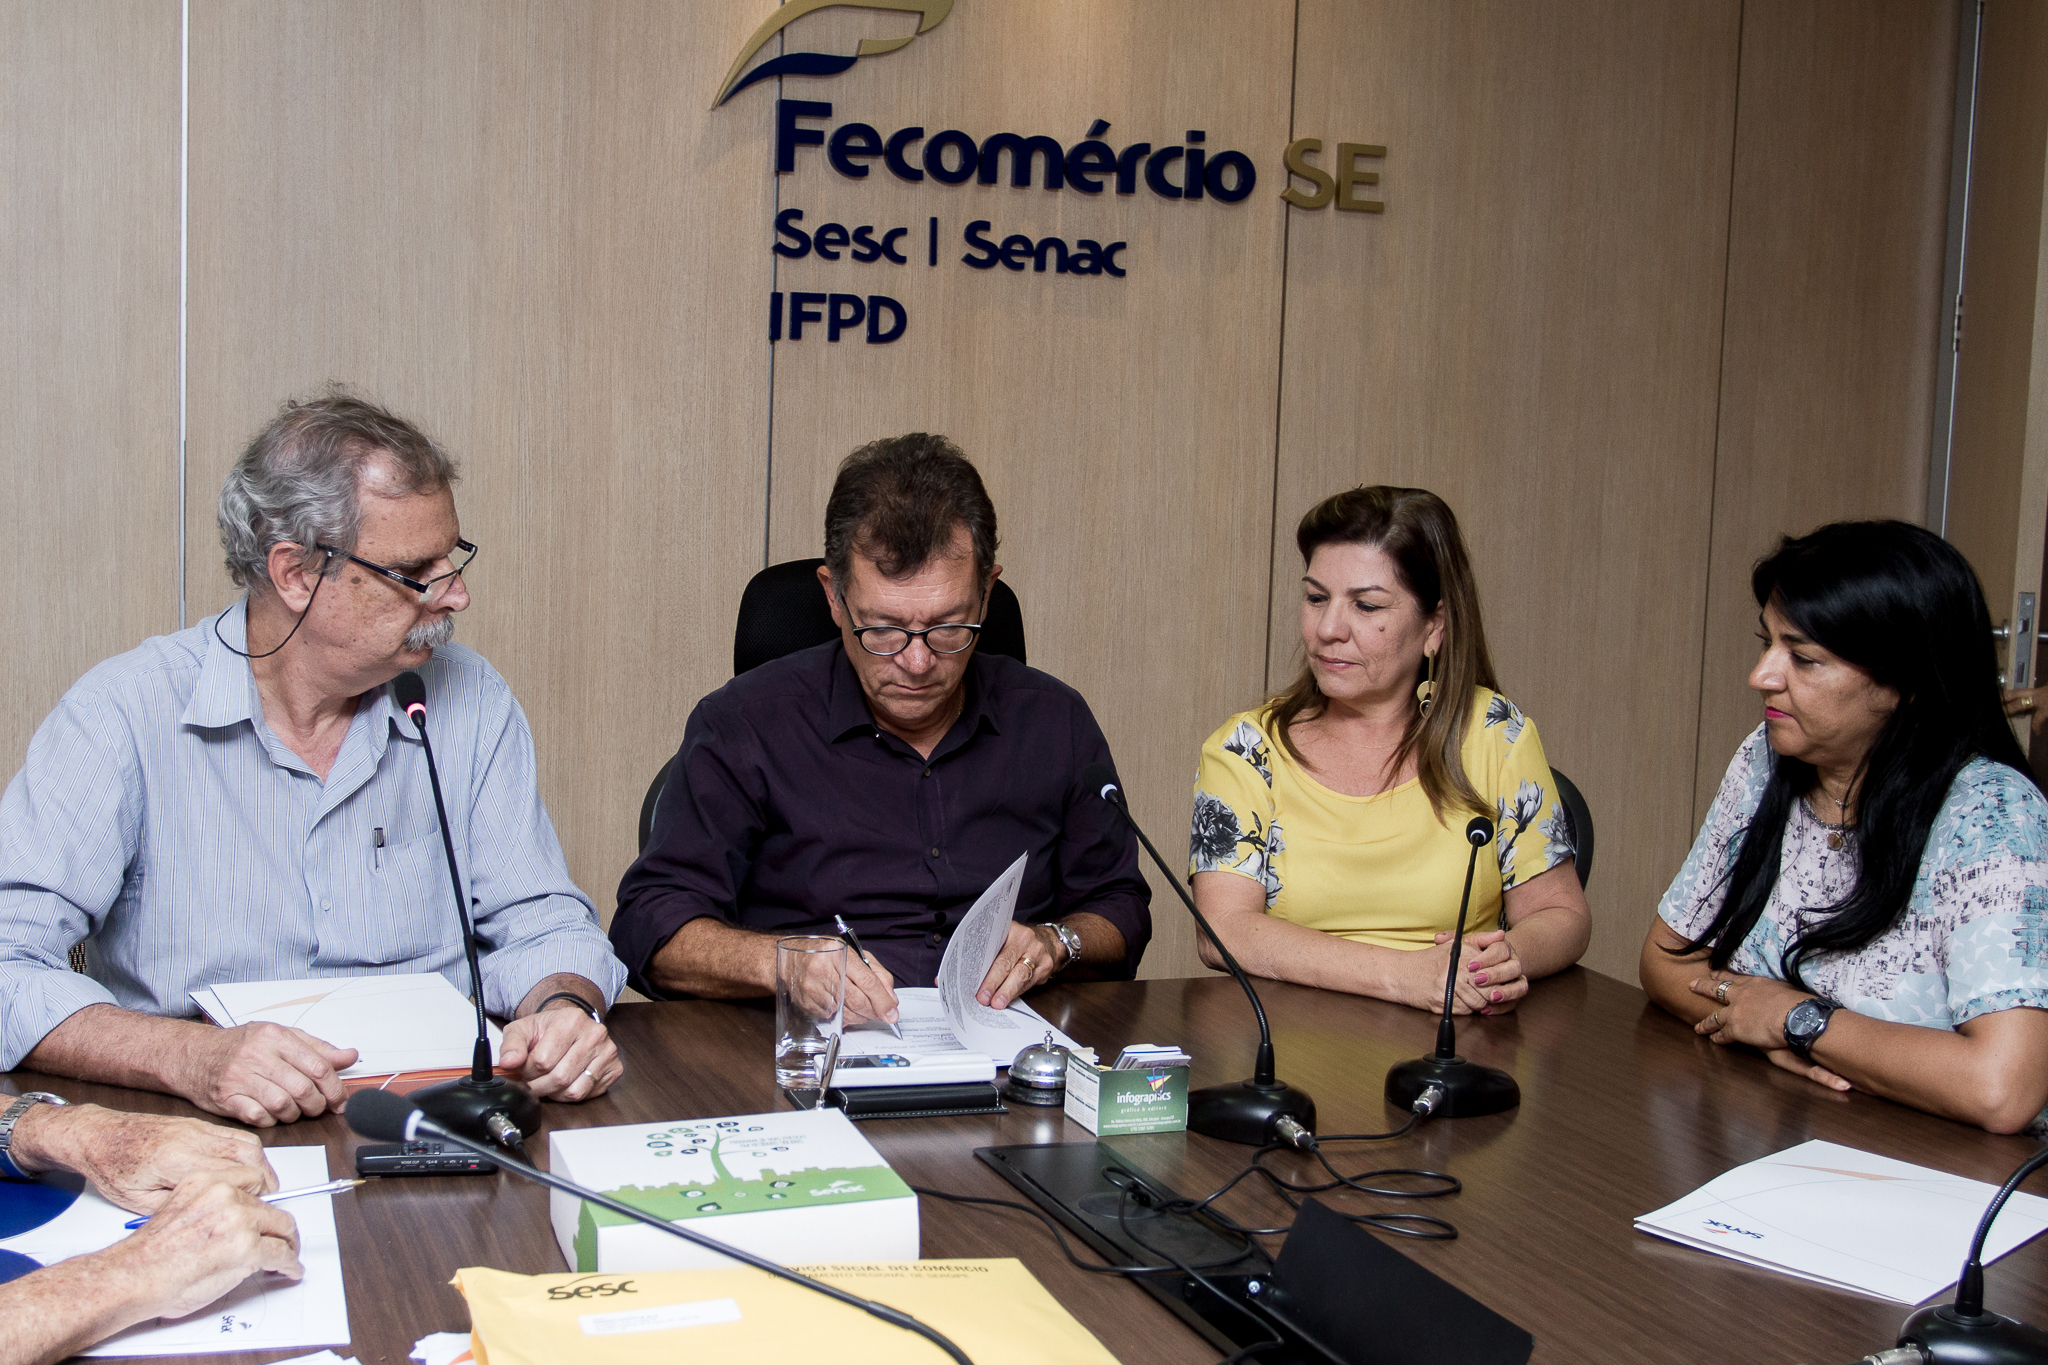 Fecomércio assina Convênio de Cooperação Técnica entre Senac, CRC-SE e Sescap-SE